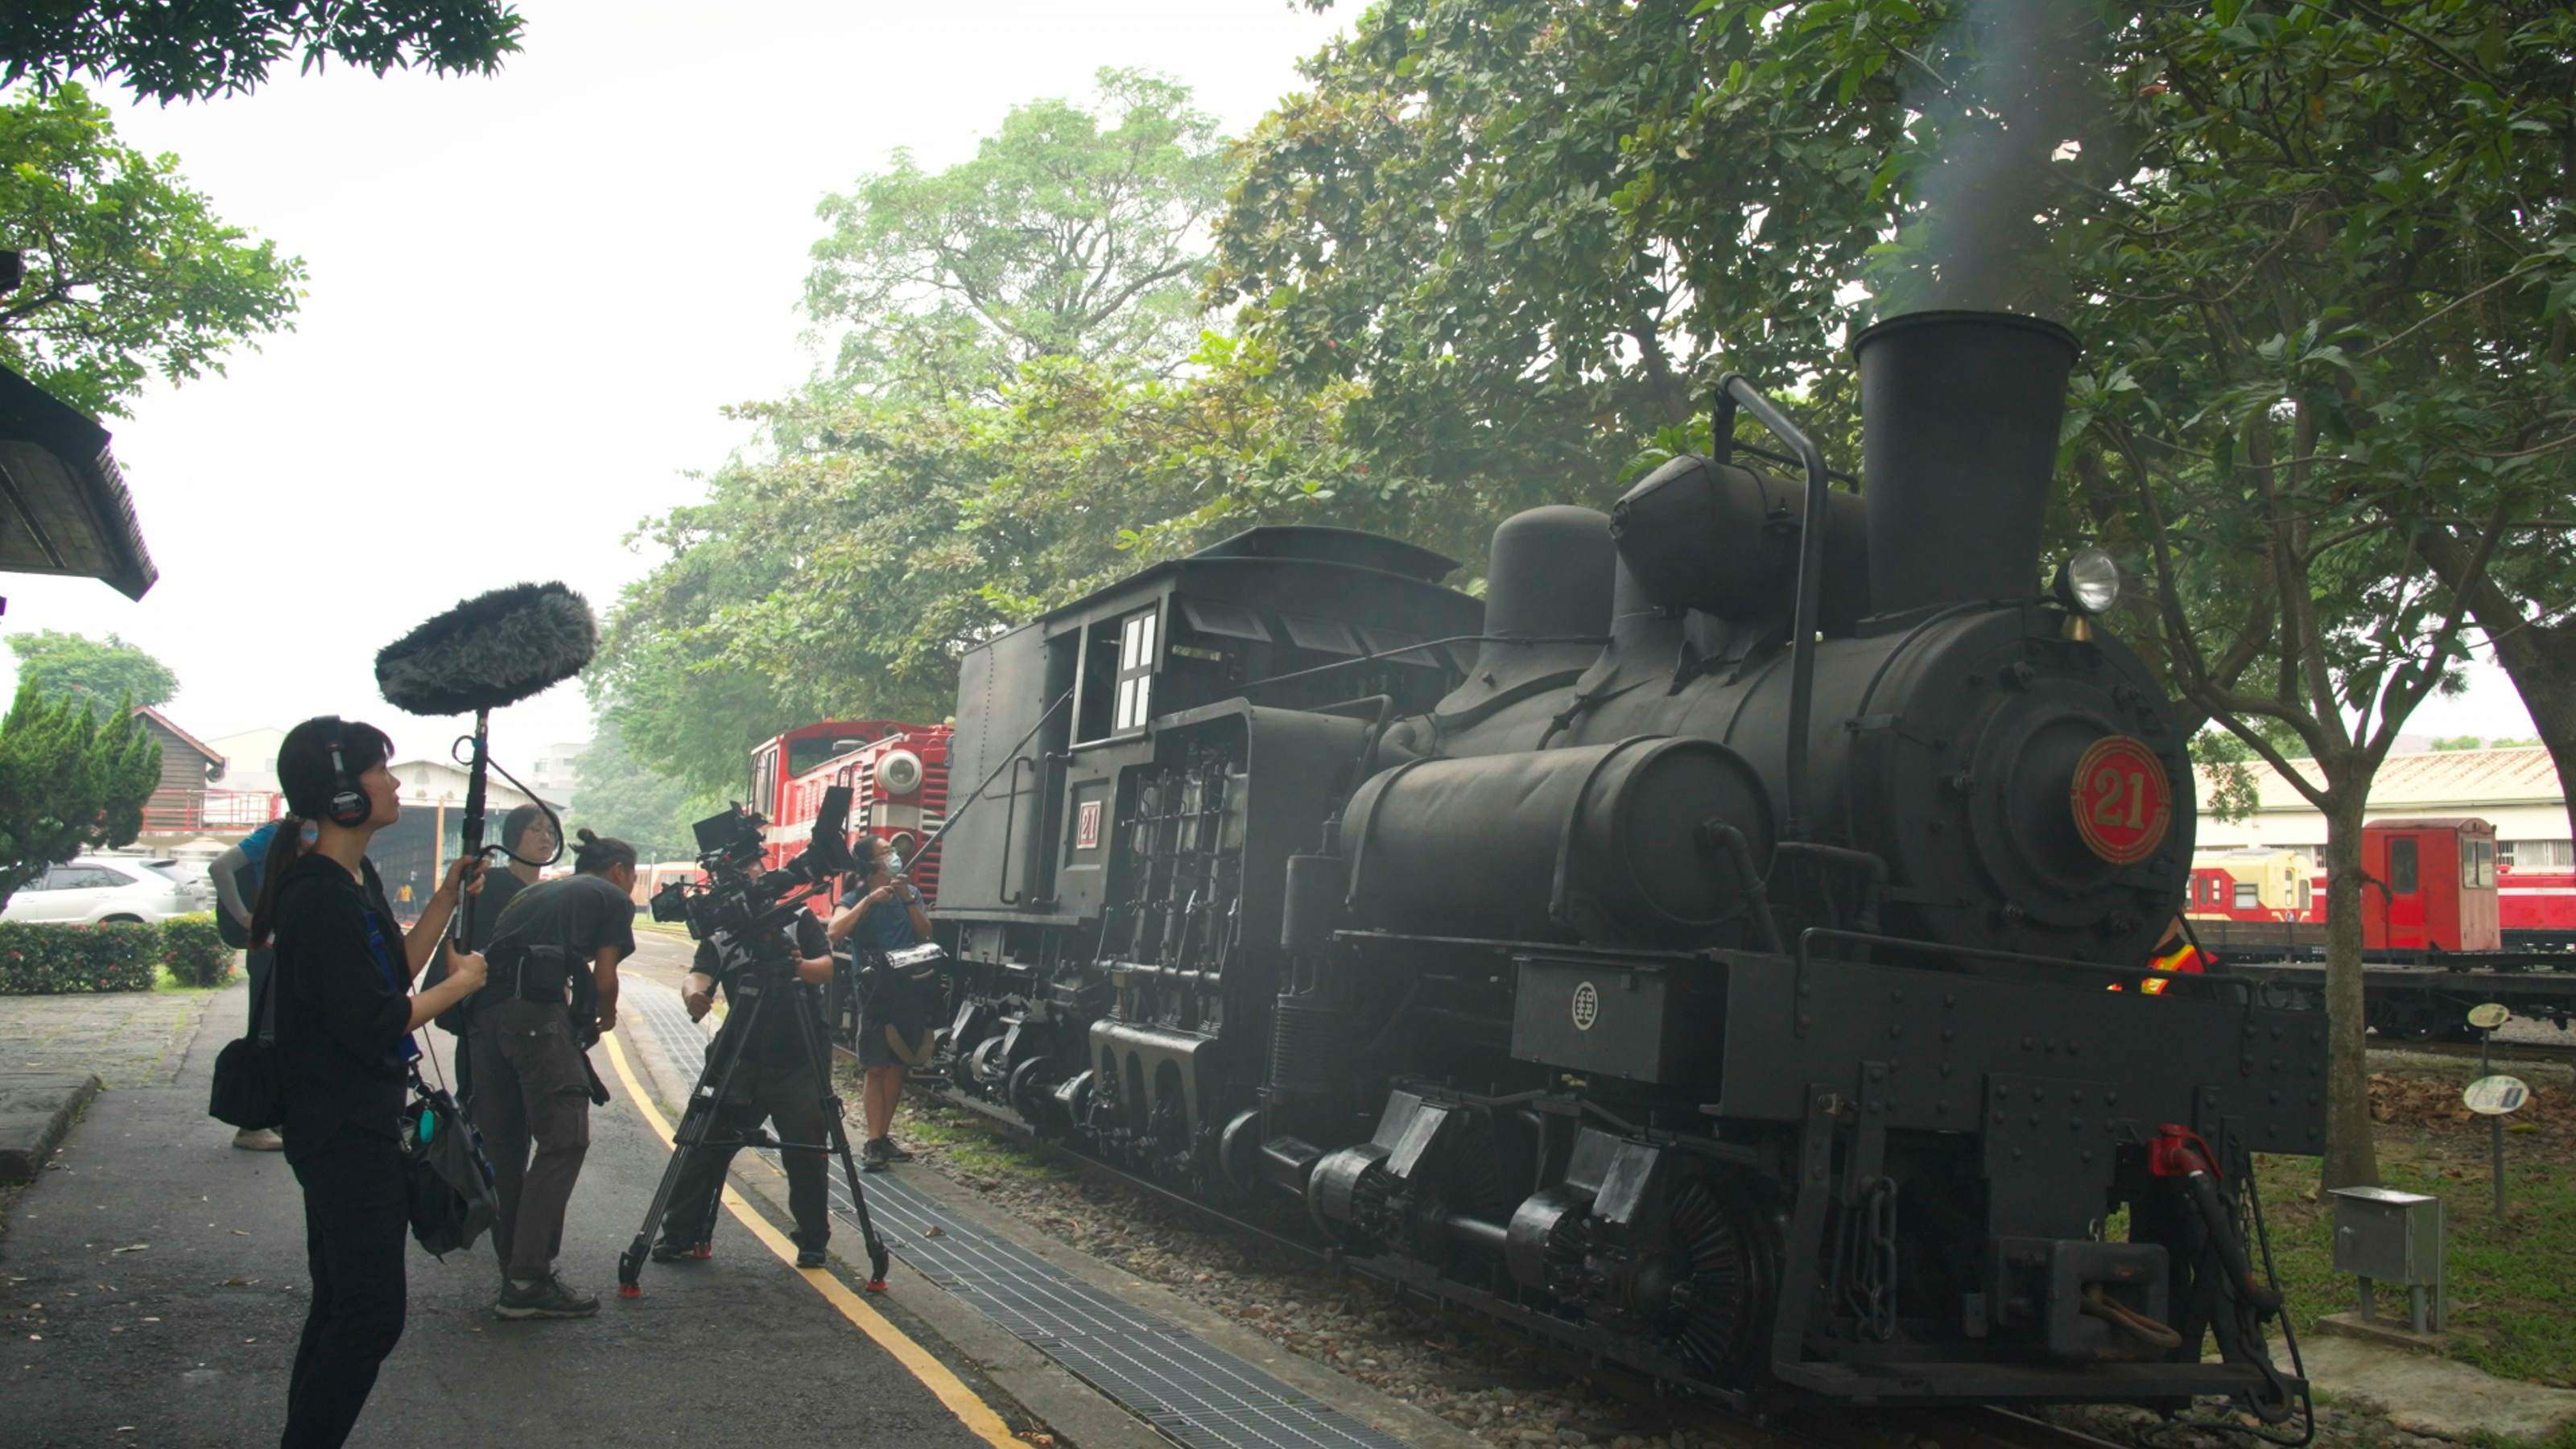 8K紀錄片《神木之森》  找到舊火車便當影像